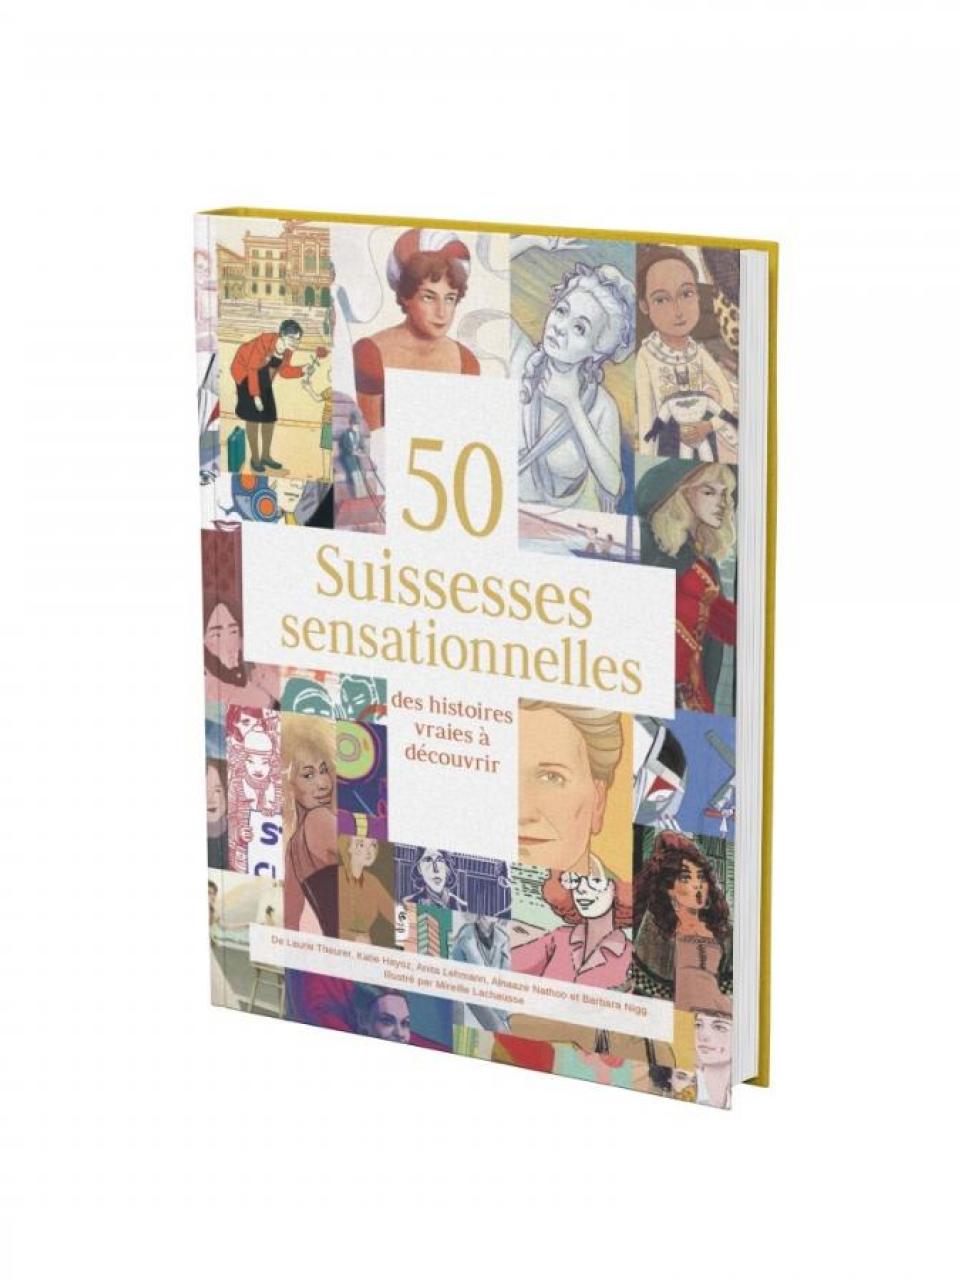 Libro : "50 femmes suisses sensationnelles"